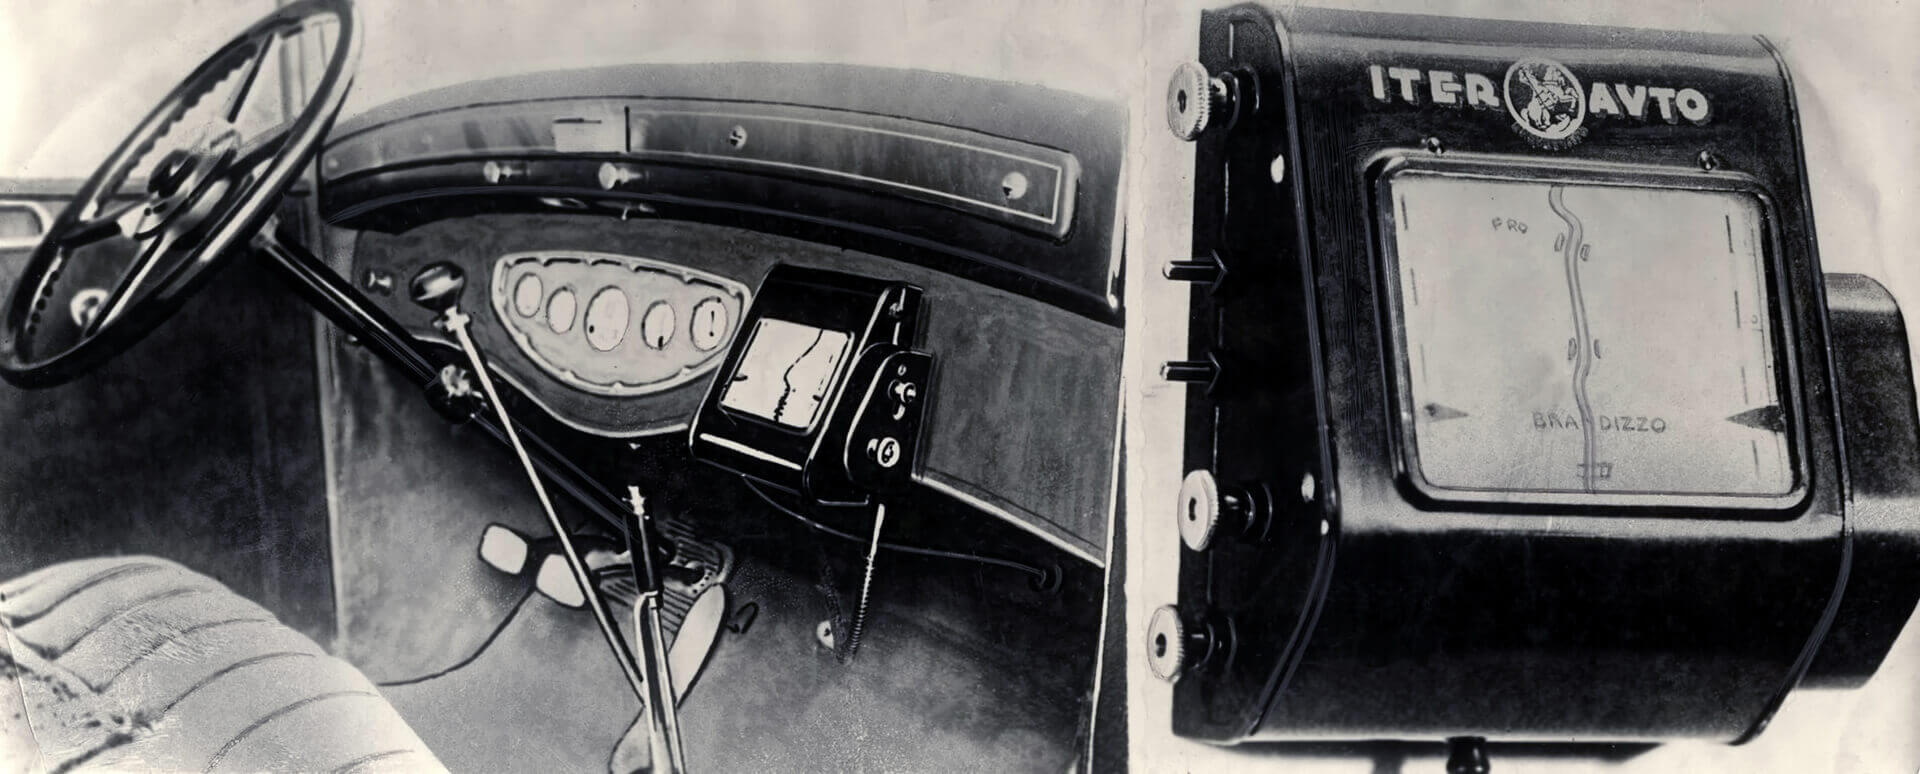 Iver Auto: el primer paso de la historia del GPS en coches